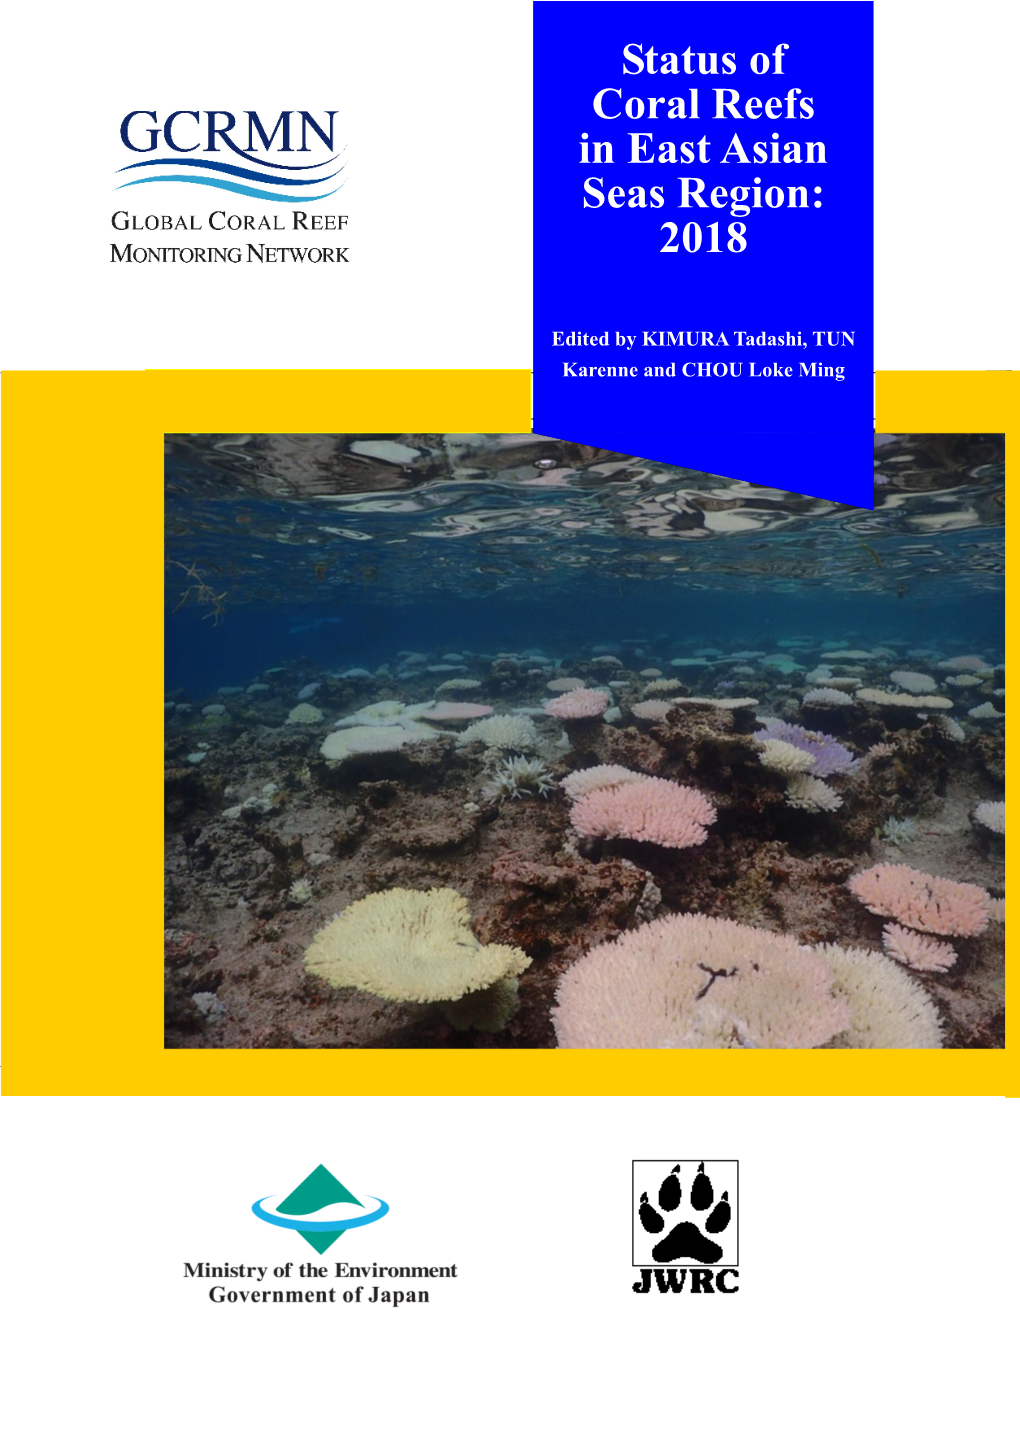 Status of Coral Reefs in East Asian Seas Region: 2018